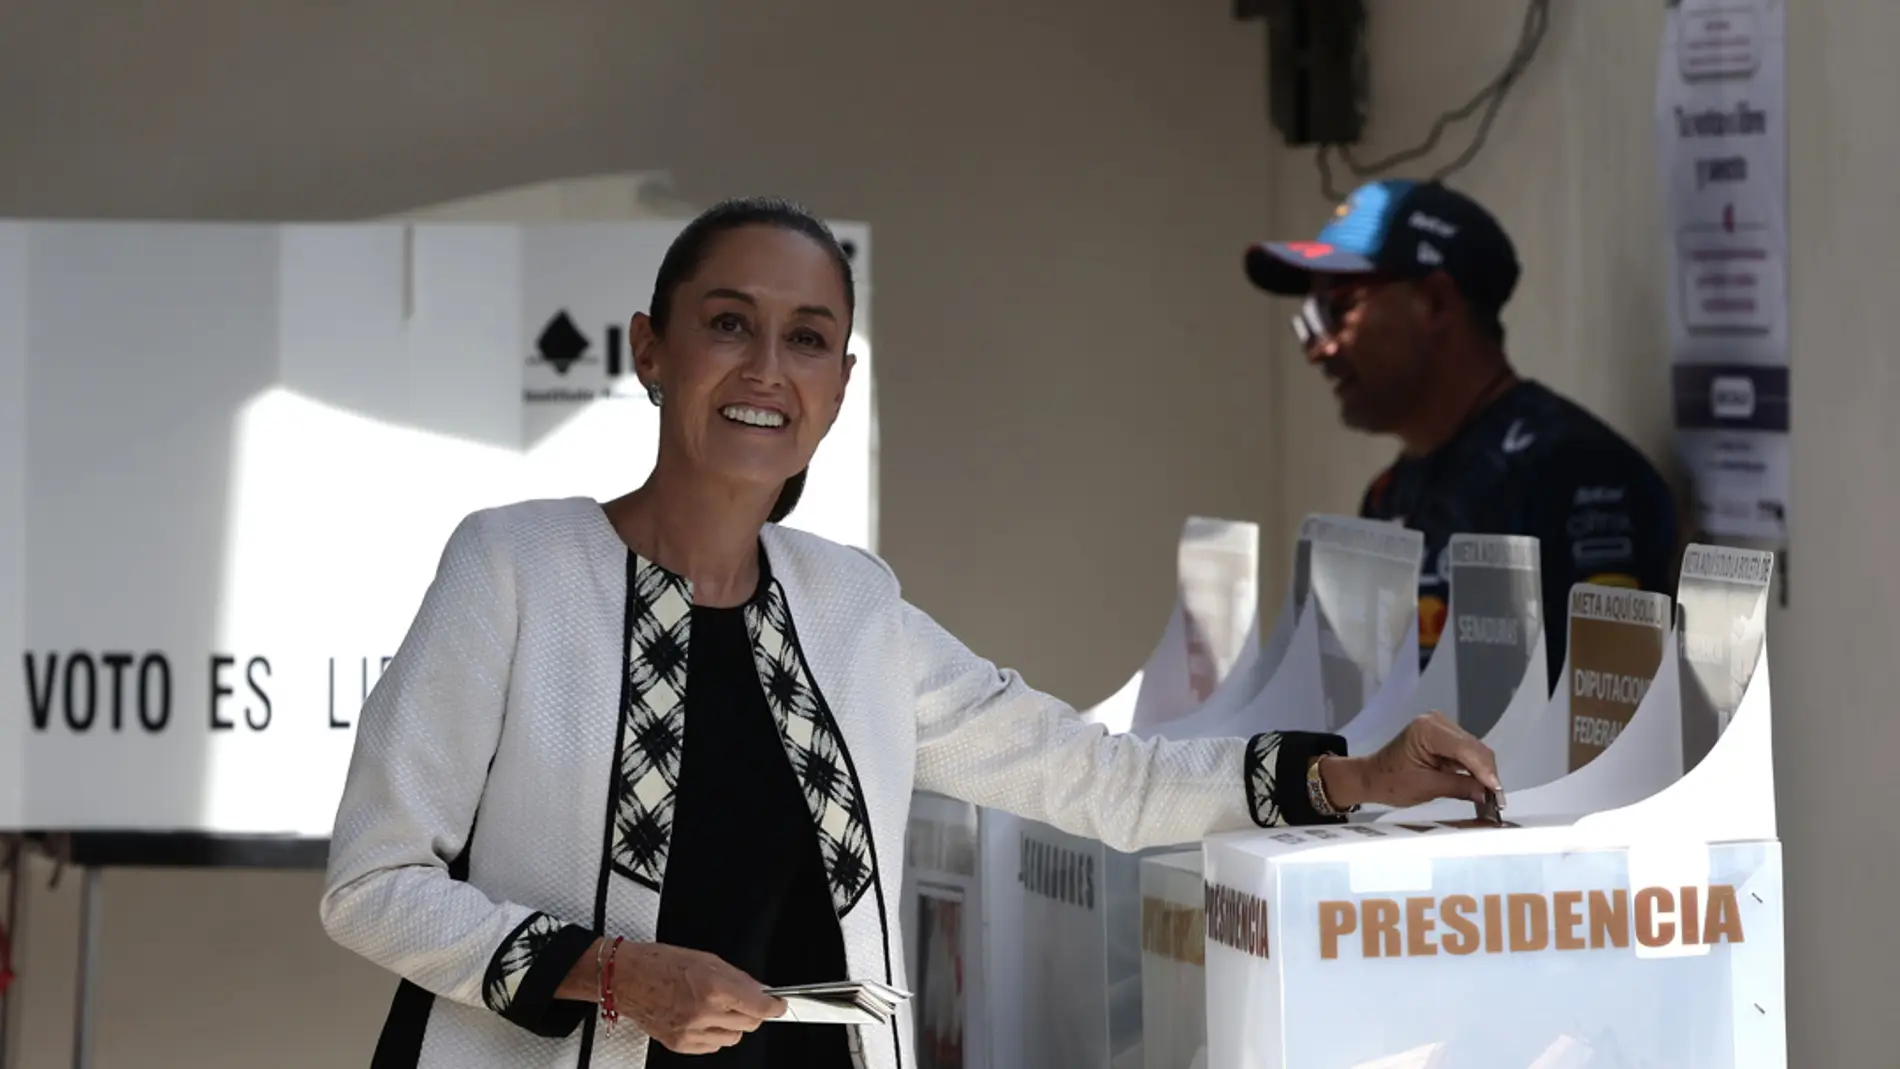 La candidata oficialista a la presidencia de México, Claudia Sheinbaum, vota en las elecciones generales mexicanas este domingo